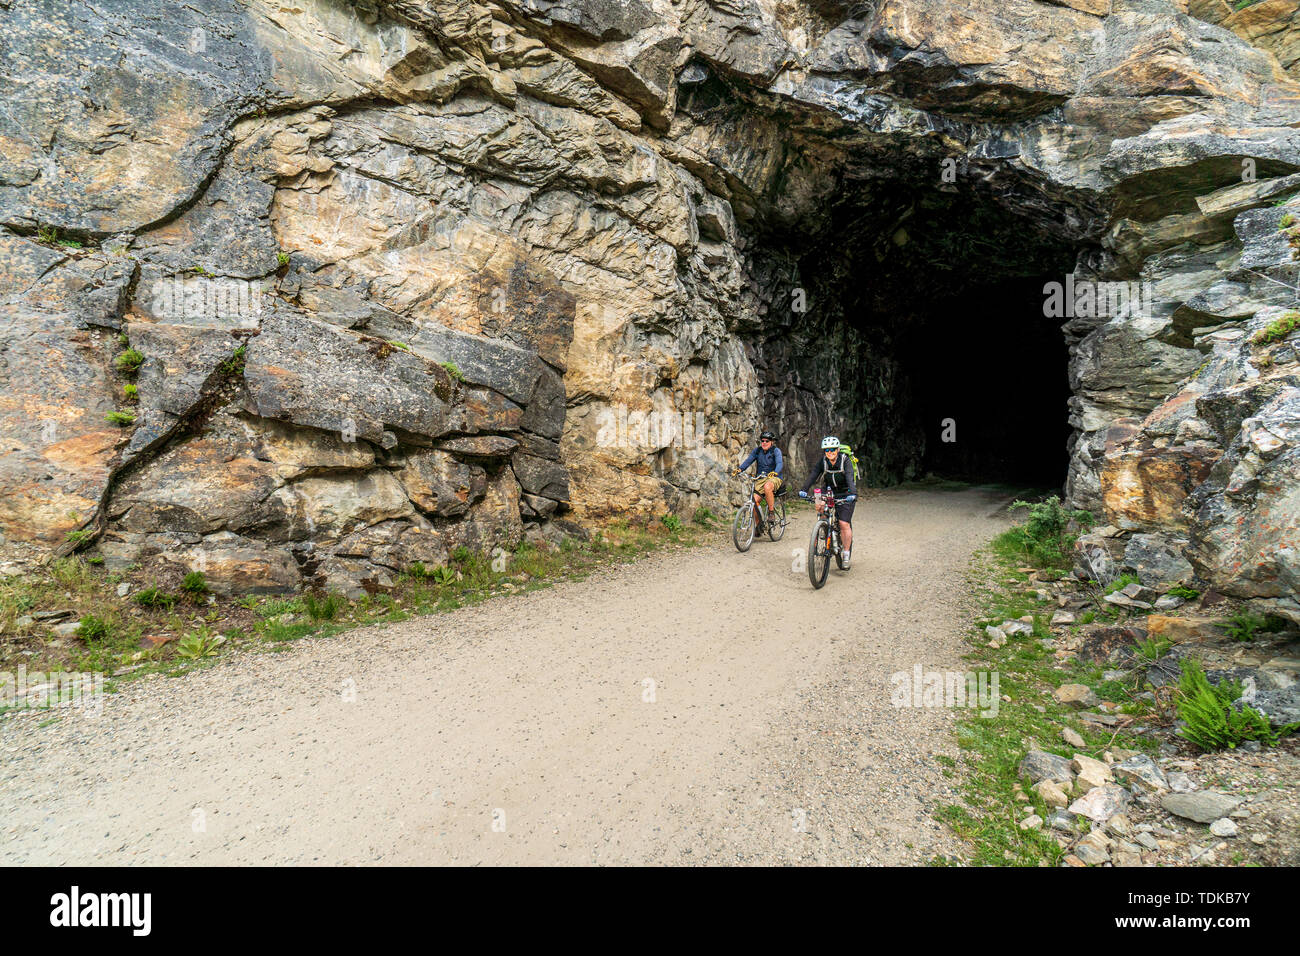 Paar Radfahren in einem der Tunnel der Kettle Valley Railway (KVR) eine verlassene Eisenbahn zu einem Wander-/Radweg umgewandelt. Stockfoto